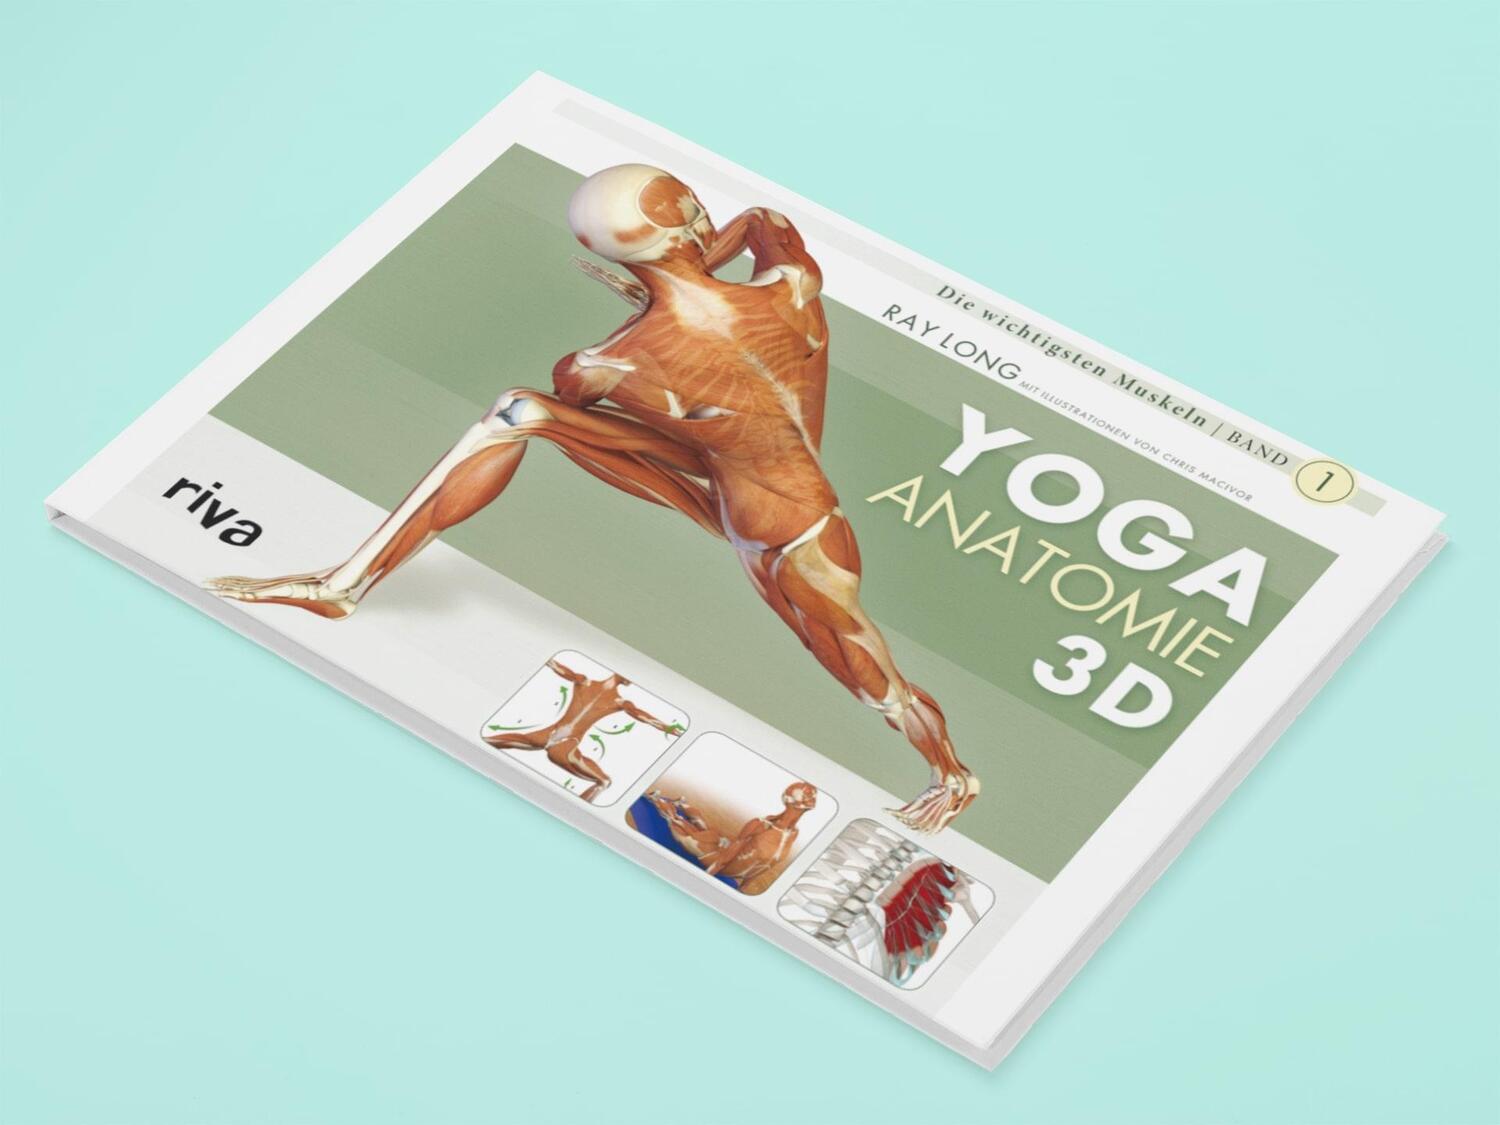 Bild: 9783868830927 | Yoga-Anatomie 3D | Band 1: Die wichtigsten Muskeln | Ray Long | Buch